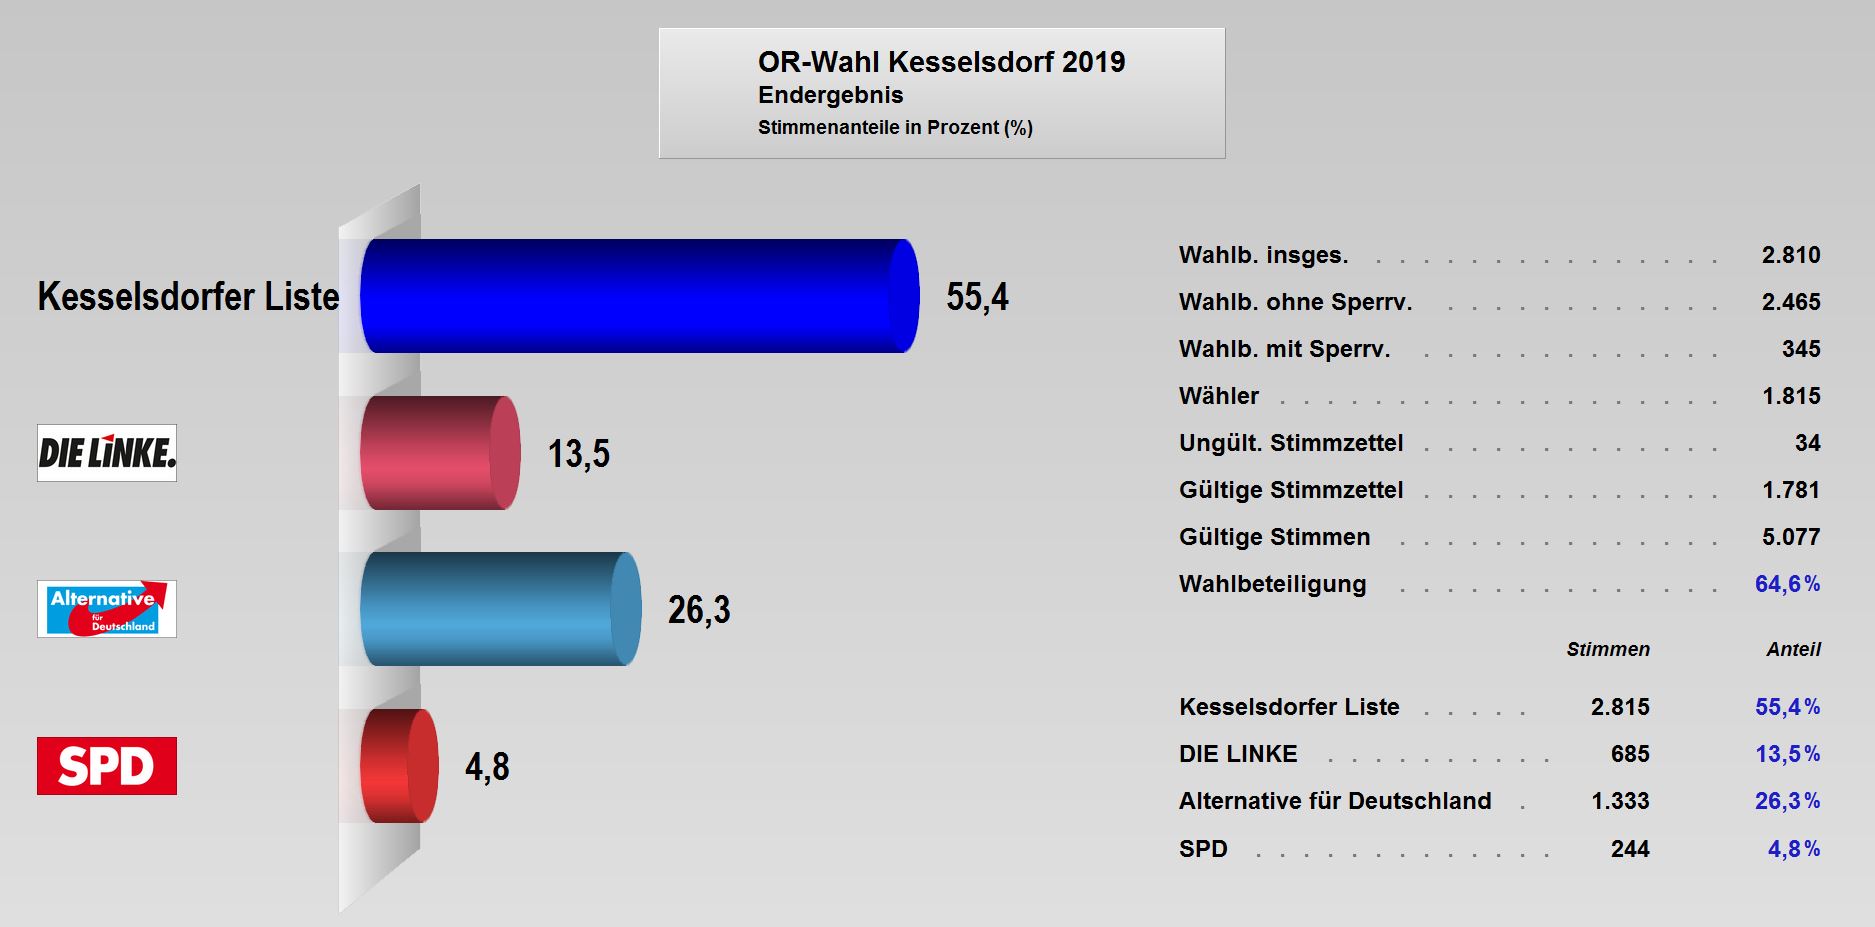 OR-Wahl_2019_Endergebnis_Kesselsdorf.JPG